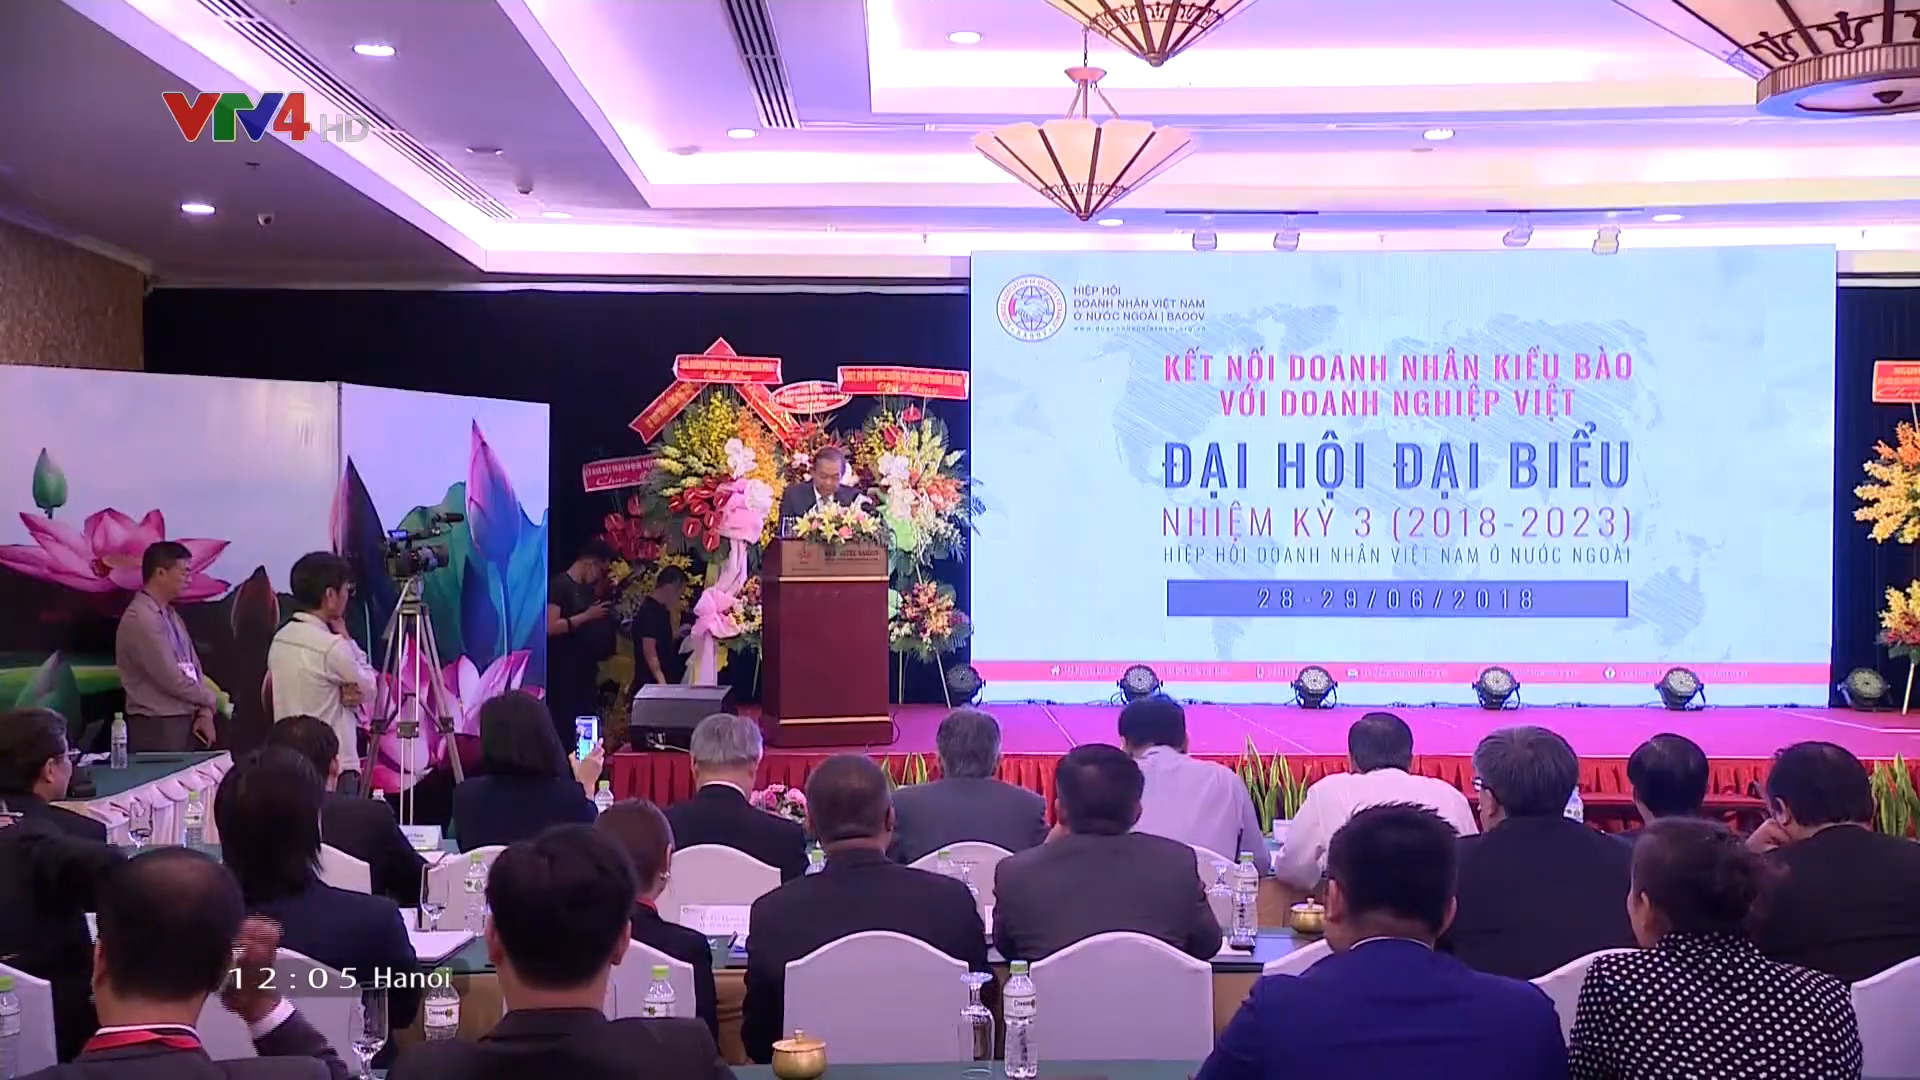 Đại hội đại biểu lần thứ 3 Hiệp hội doanh nhân Việt Nam ở nước ngoài